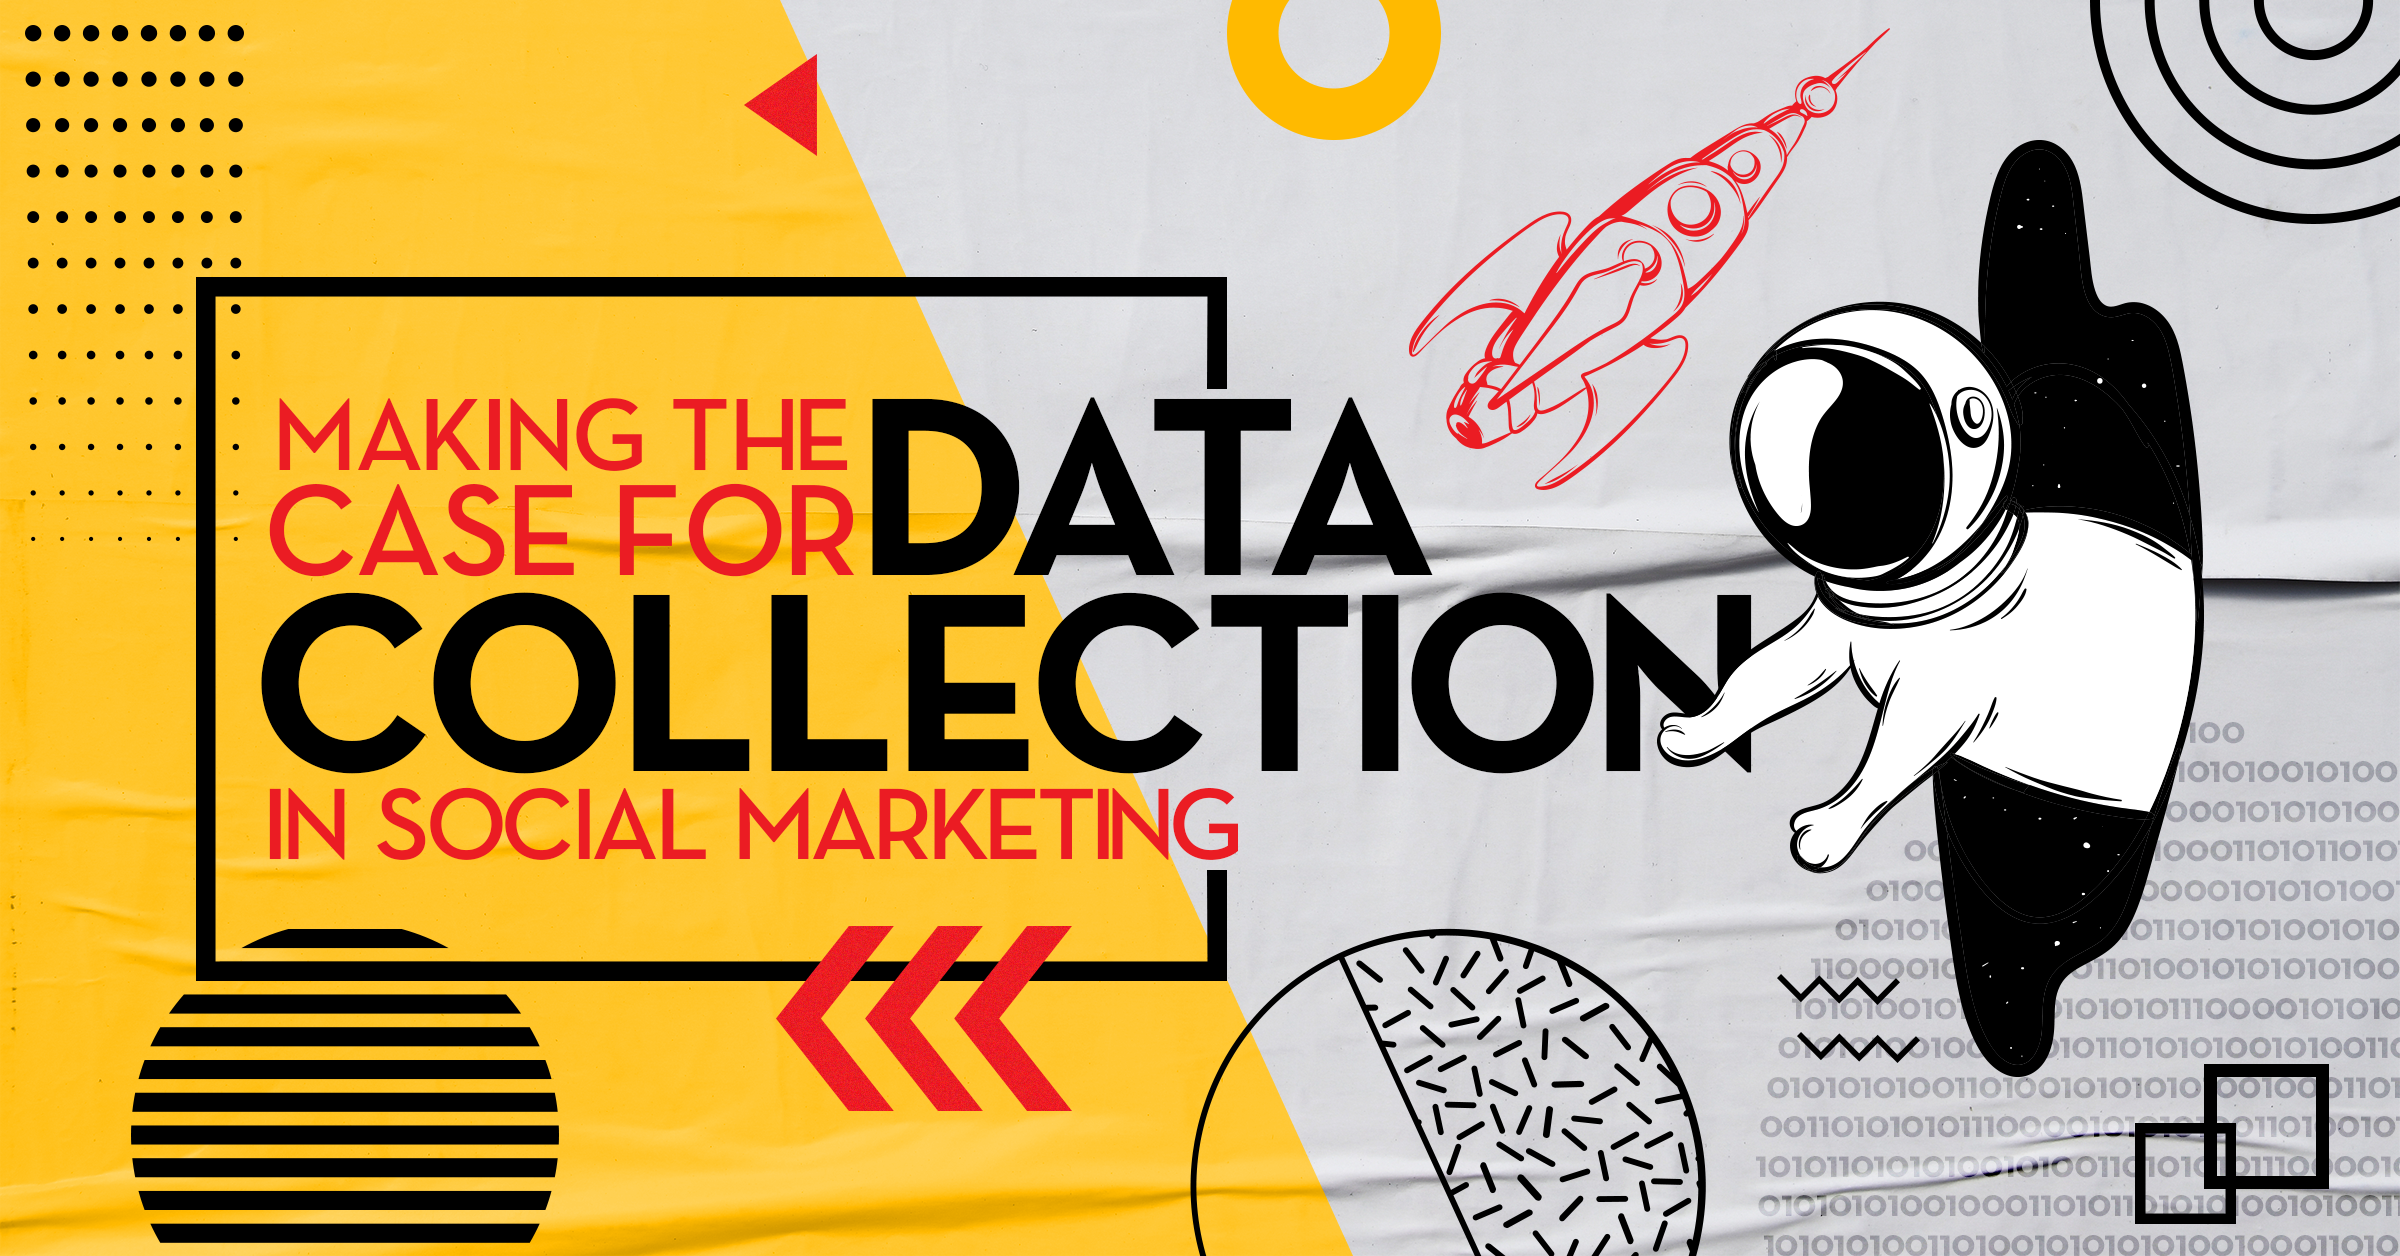 Social Data Collection